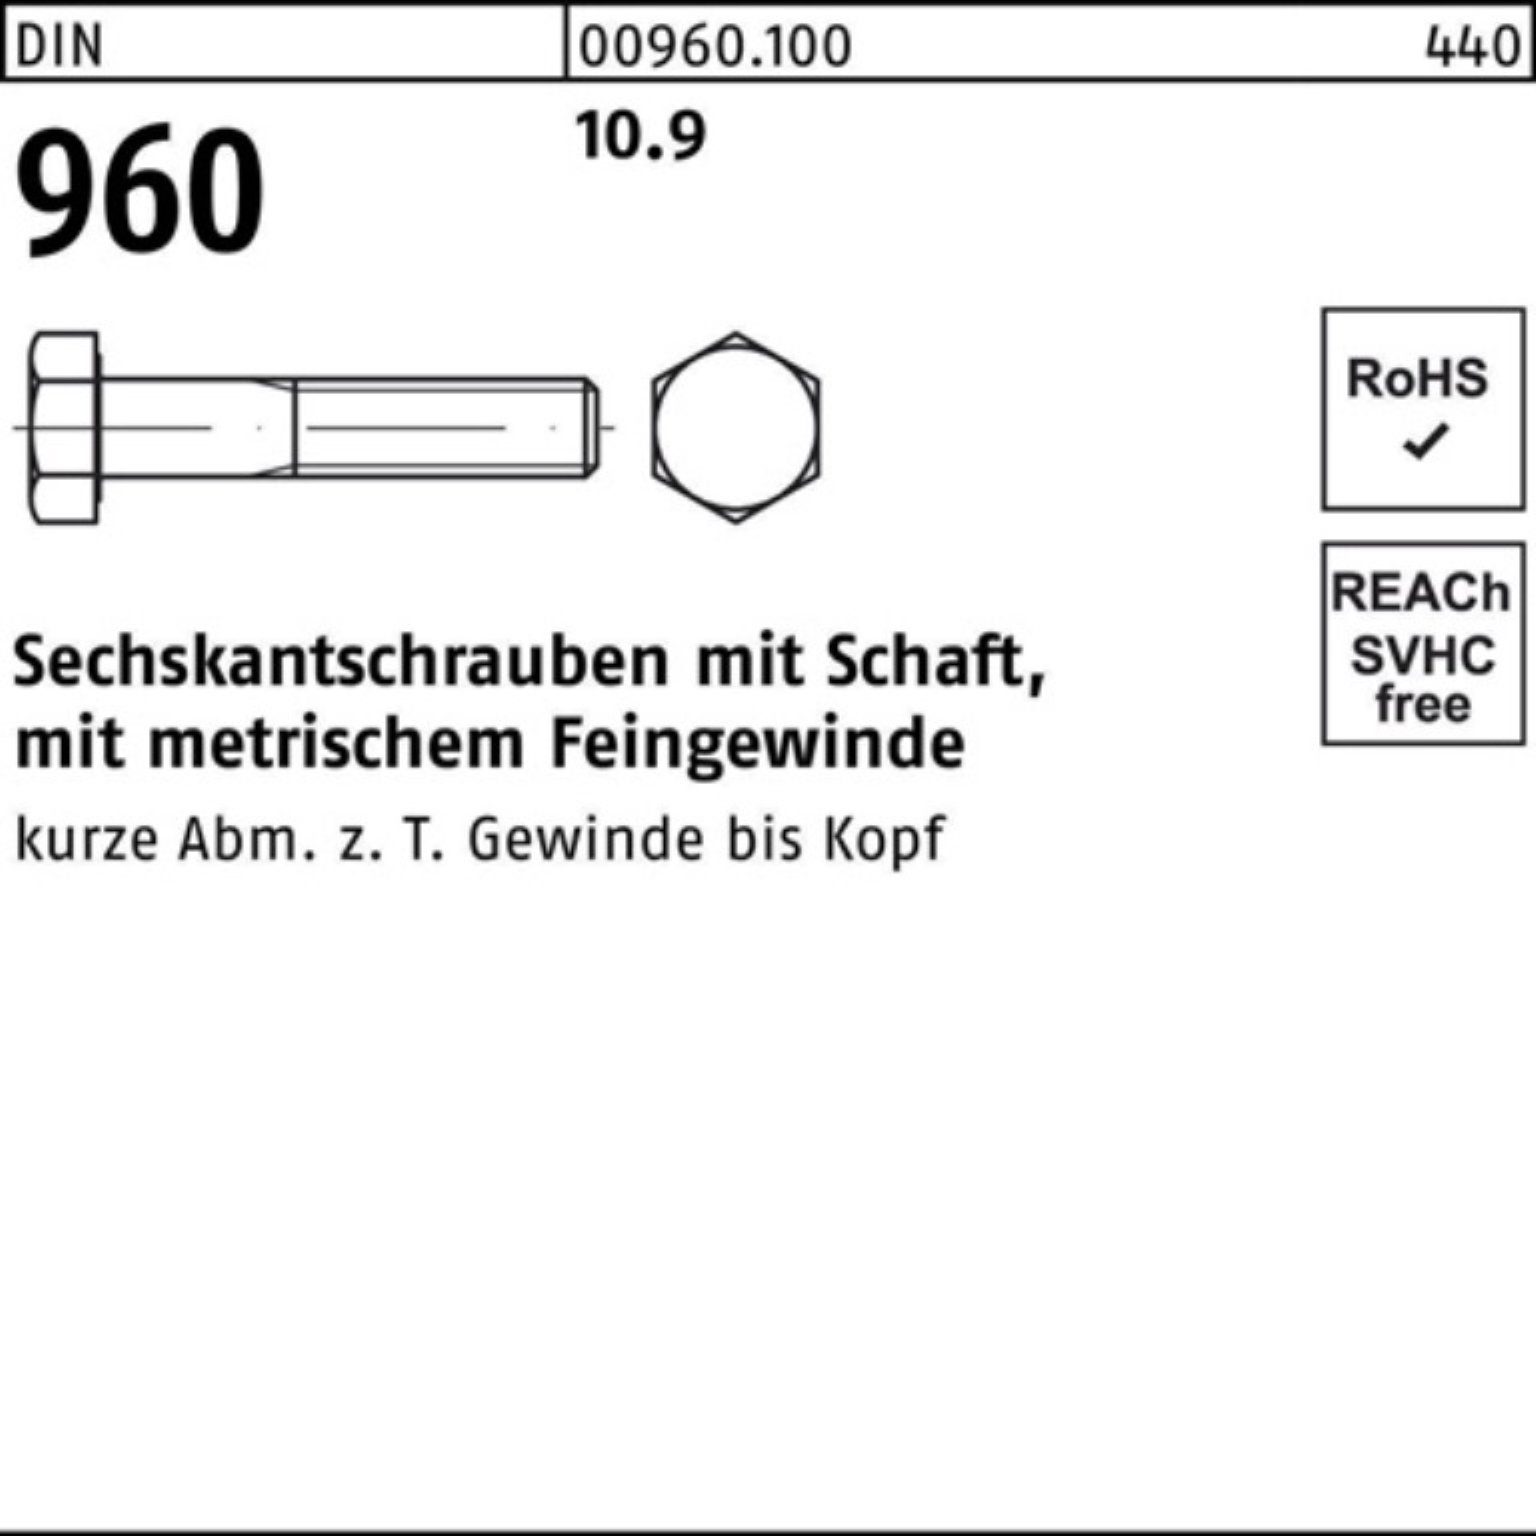 Reyher Sechskantschraube Sechskantschraube 960 DIN 100er Schaft M18x1,5x120 Stück Pack 10.9 10